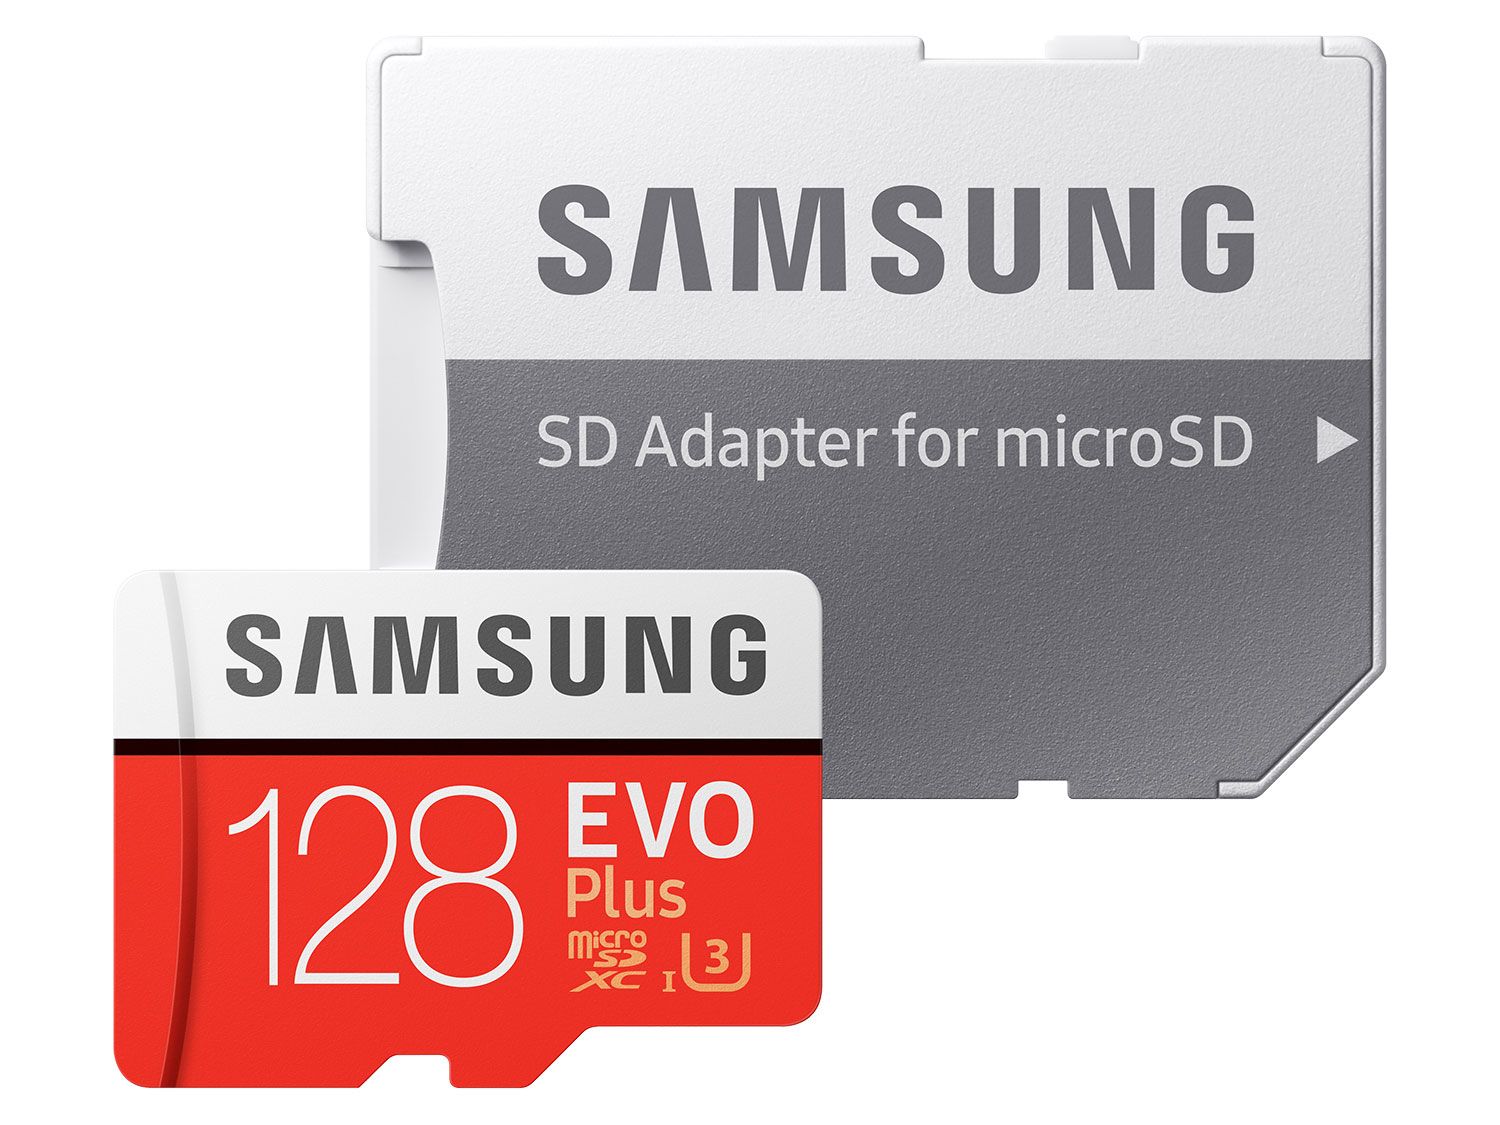 כרטיס זיכרון אקסטרים Samsung EVO Plus microSDXC With Adapter - 128GB